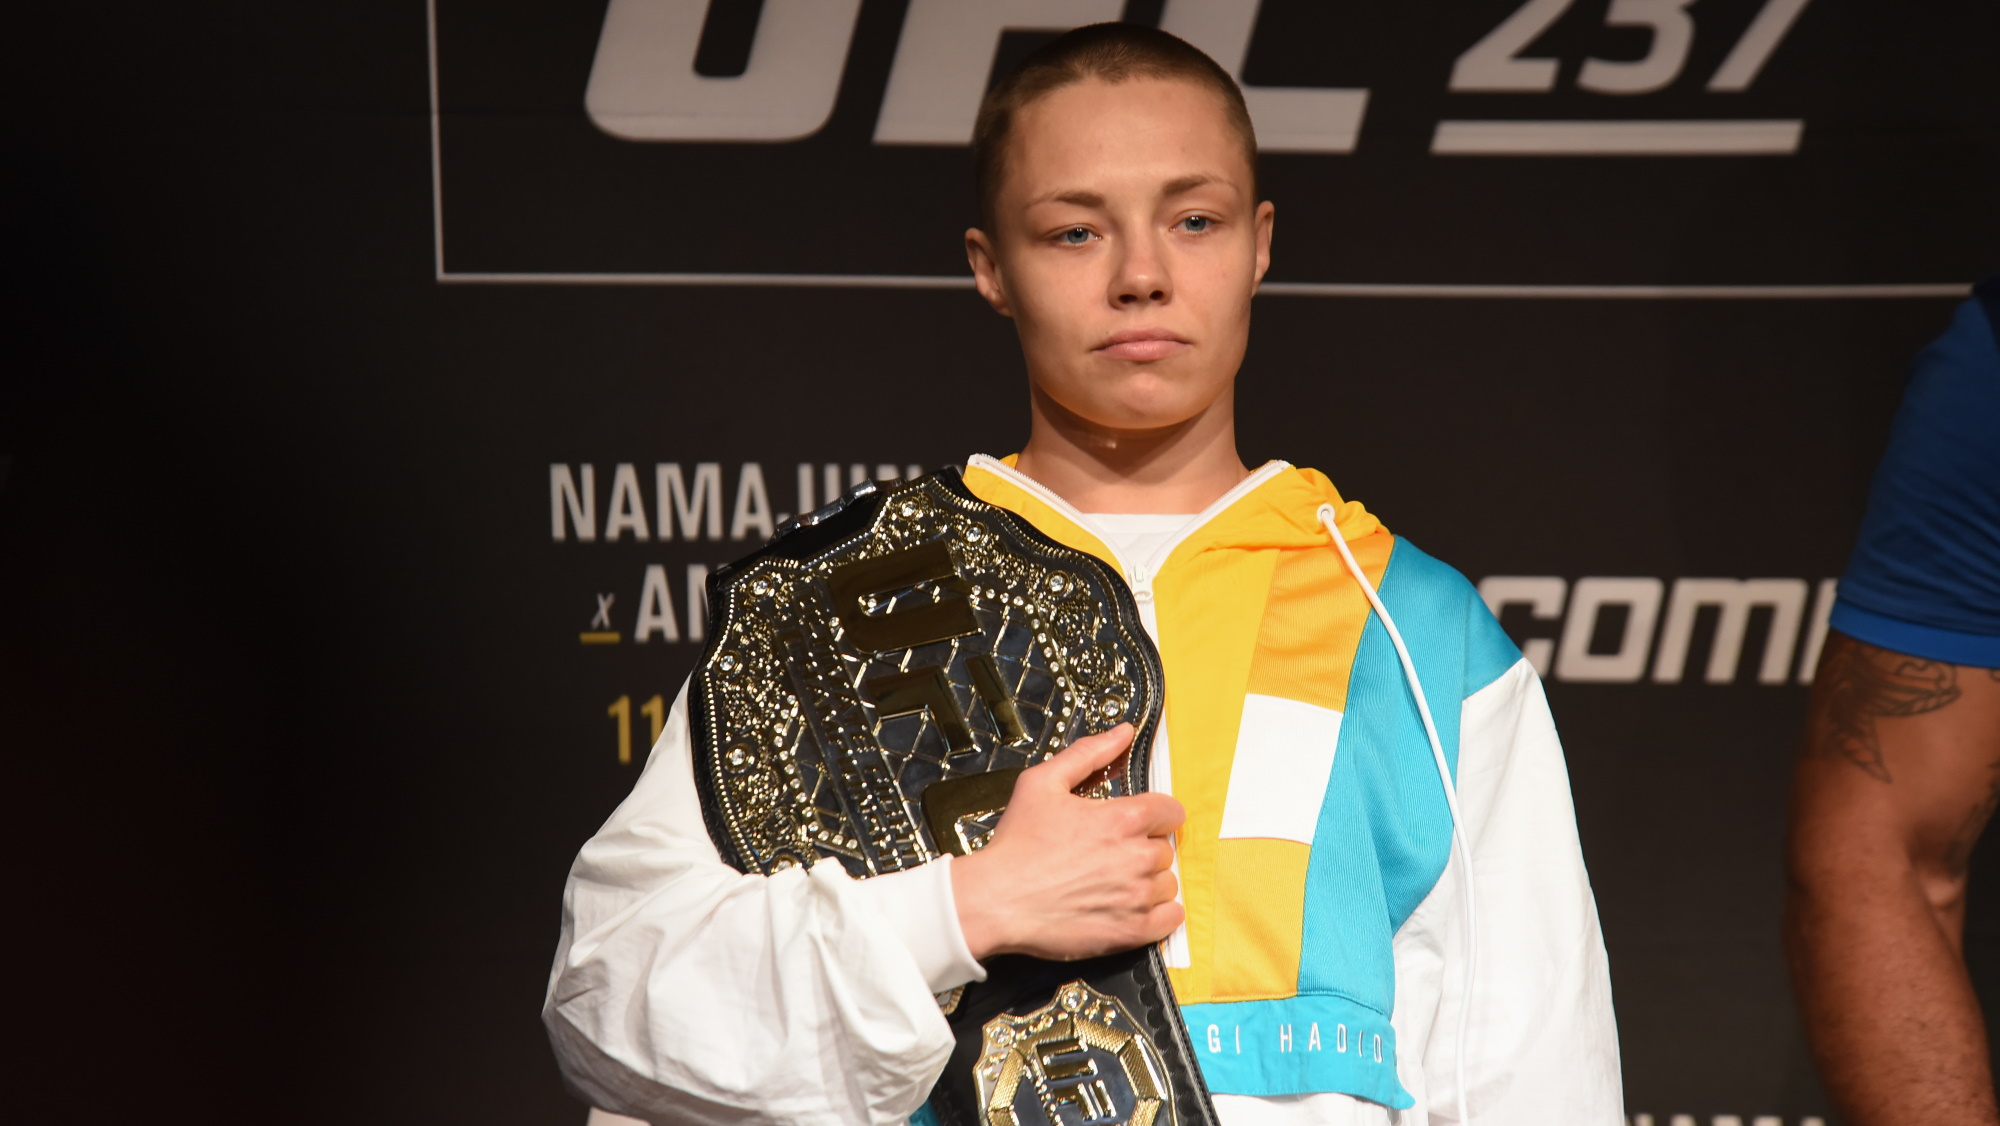 Rose Namajunas posing with a UFC title belt